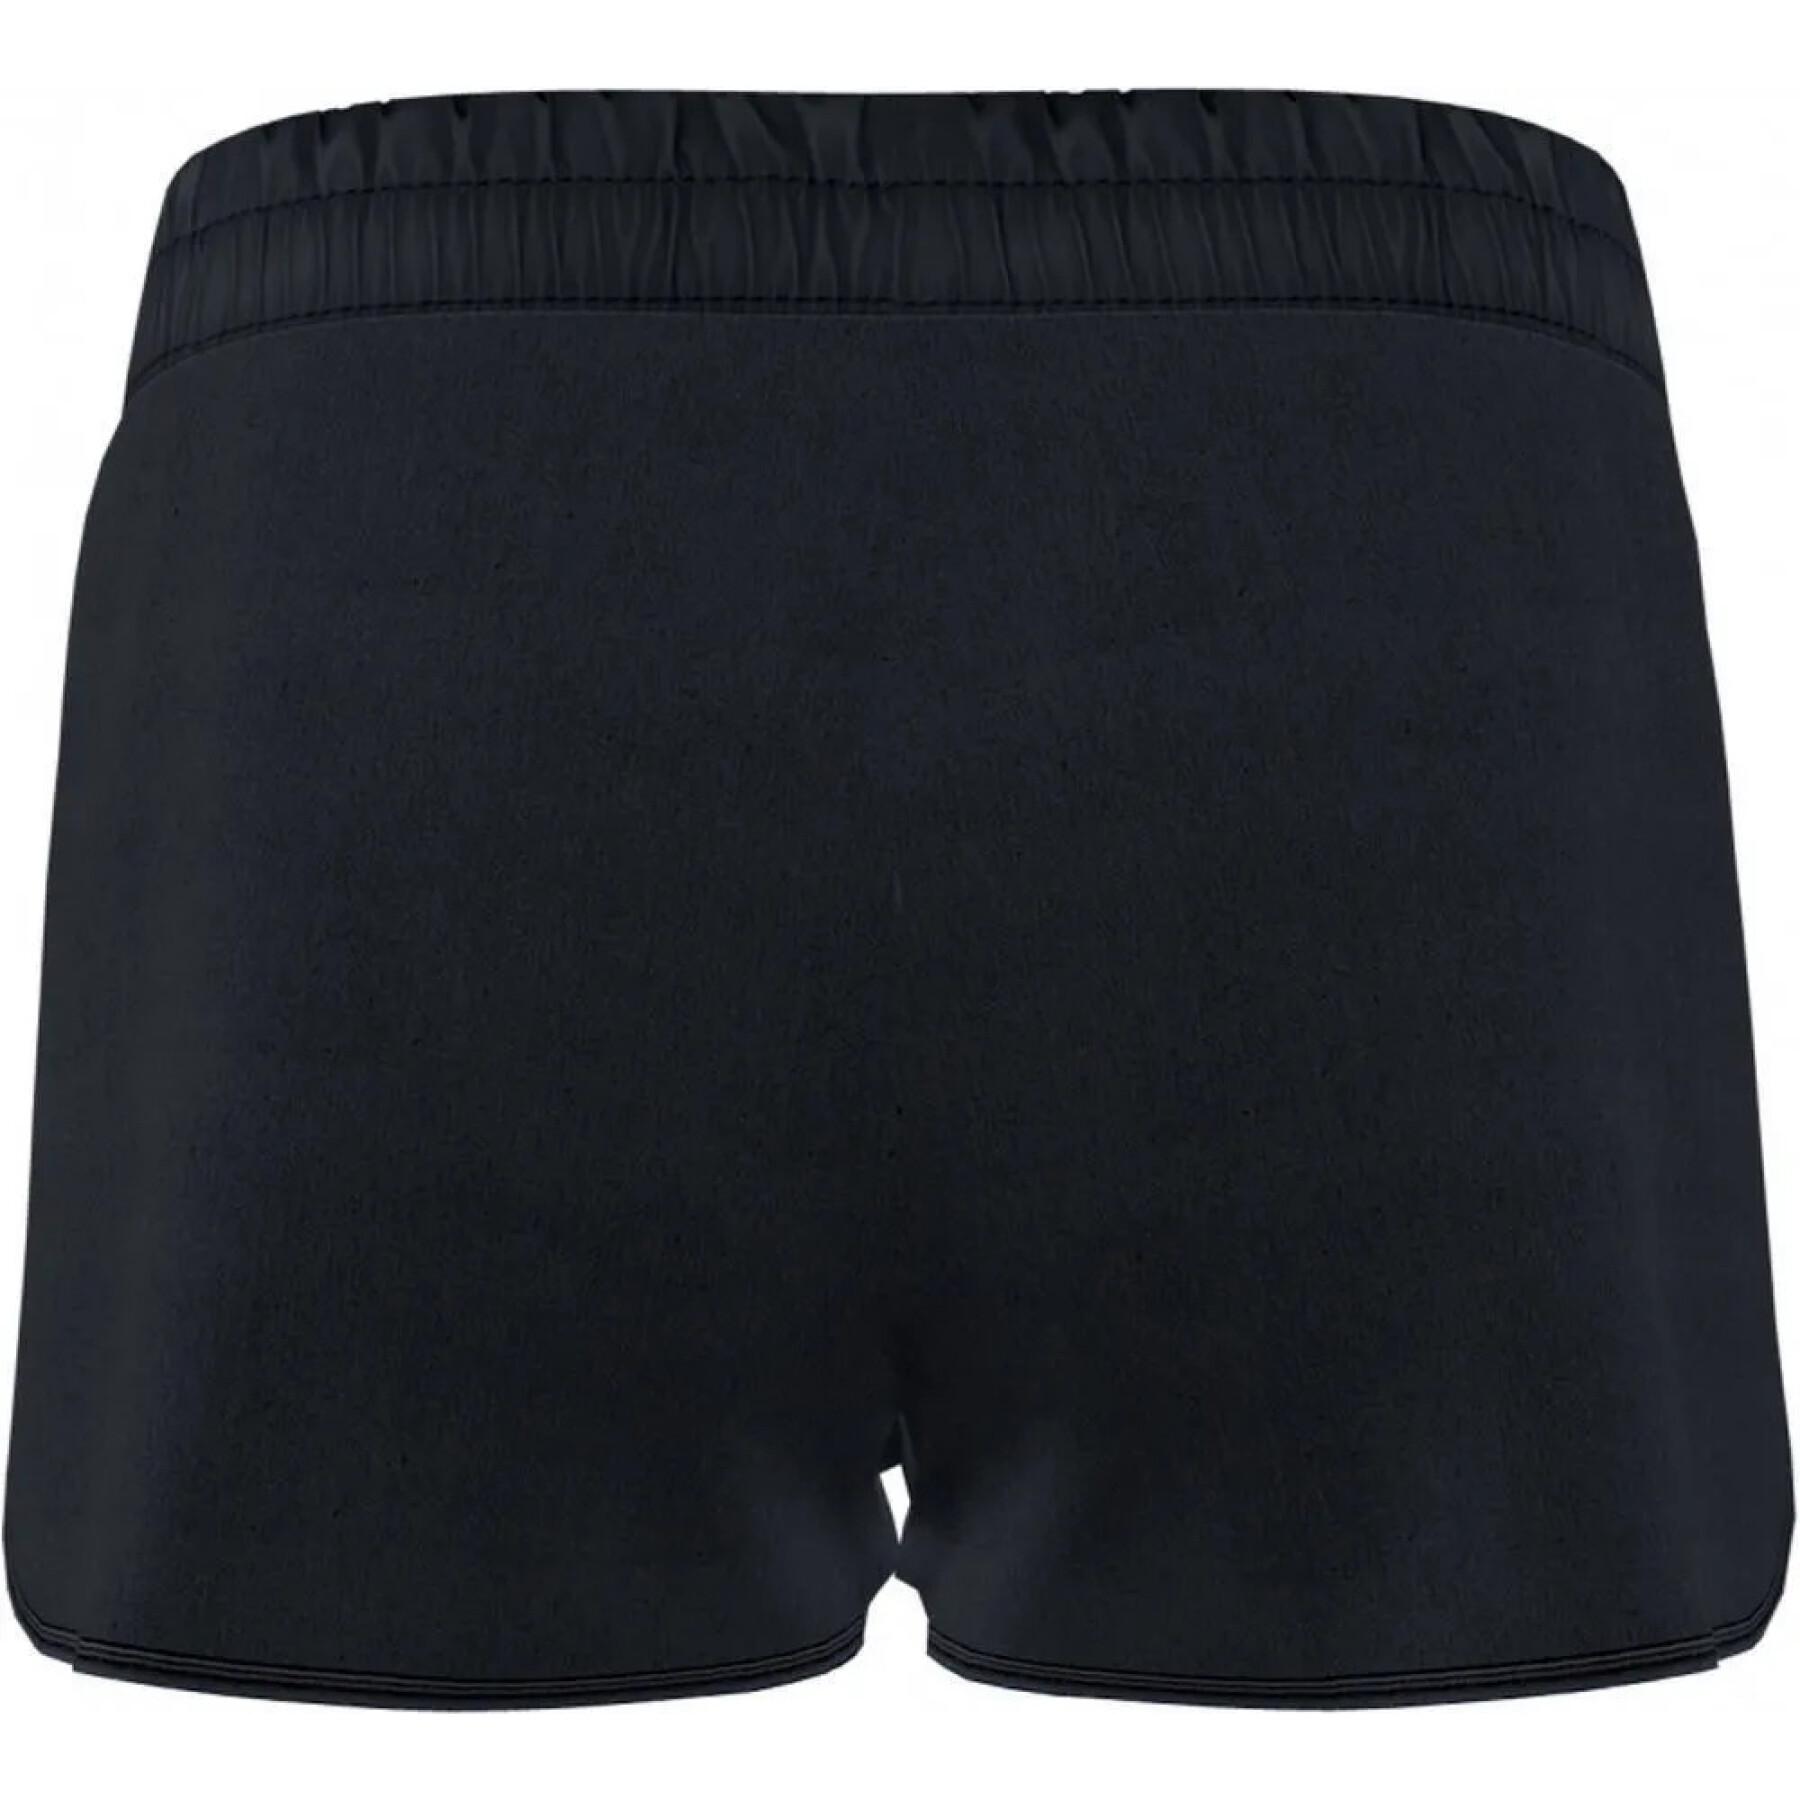 Women's shorts Joma Coves